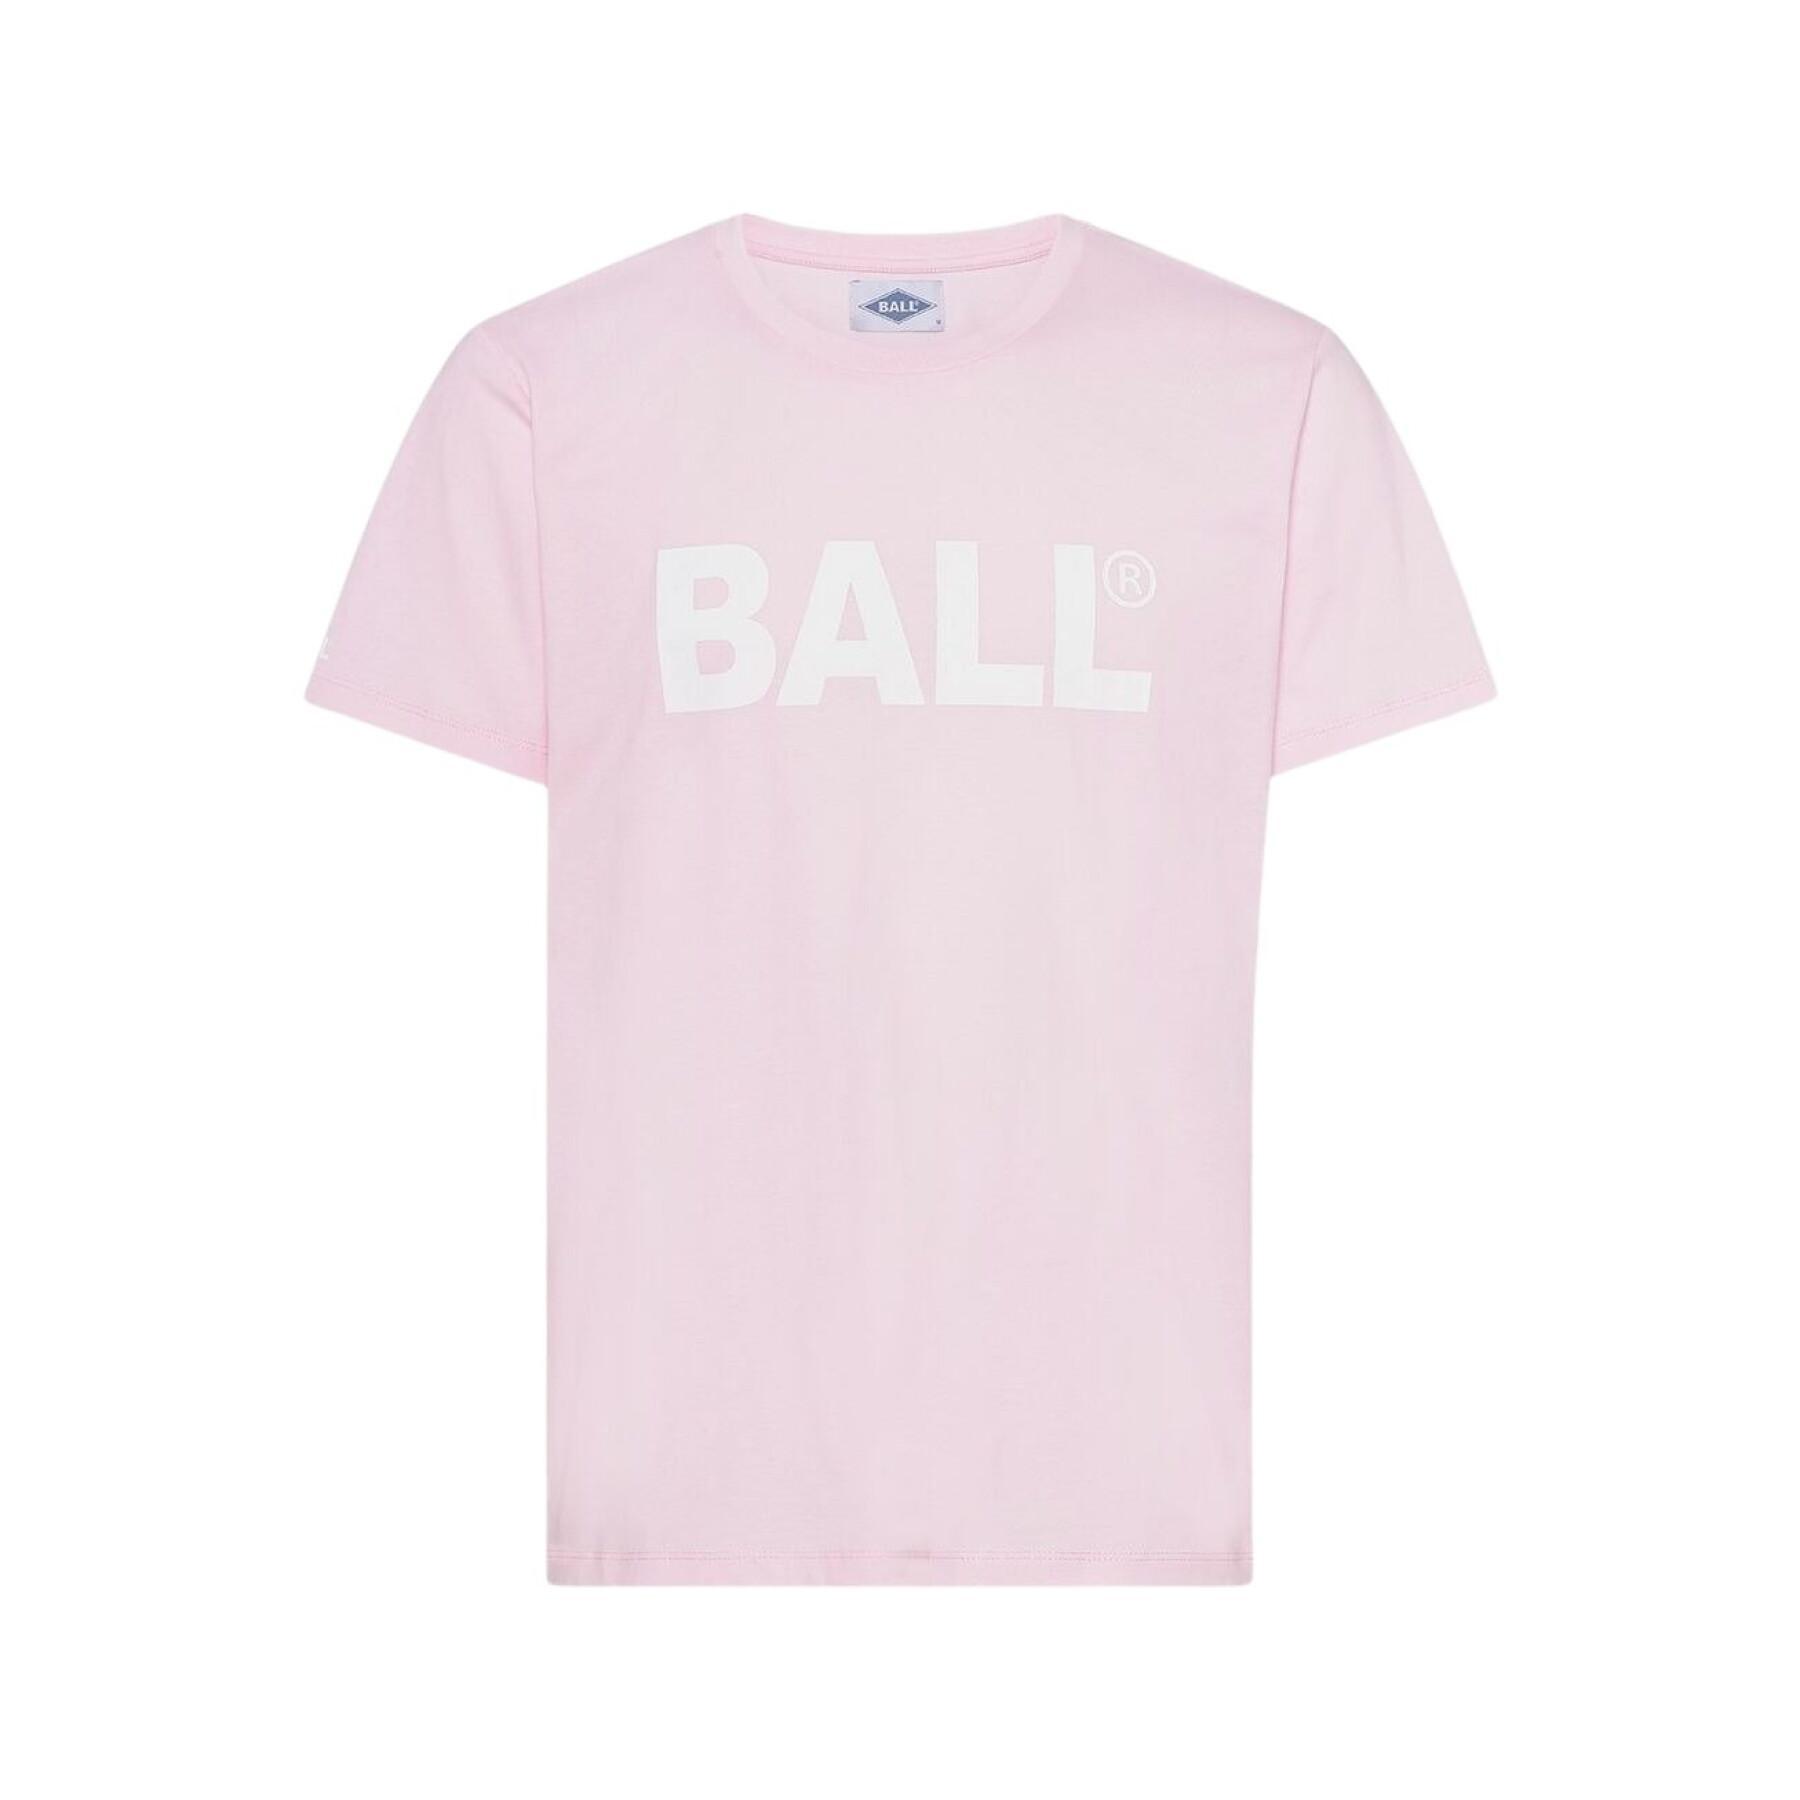 Camiseta Ball H. Long